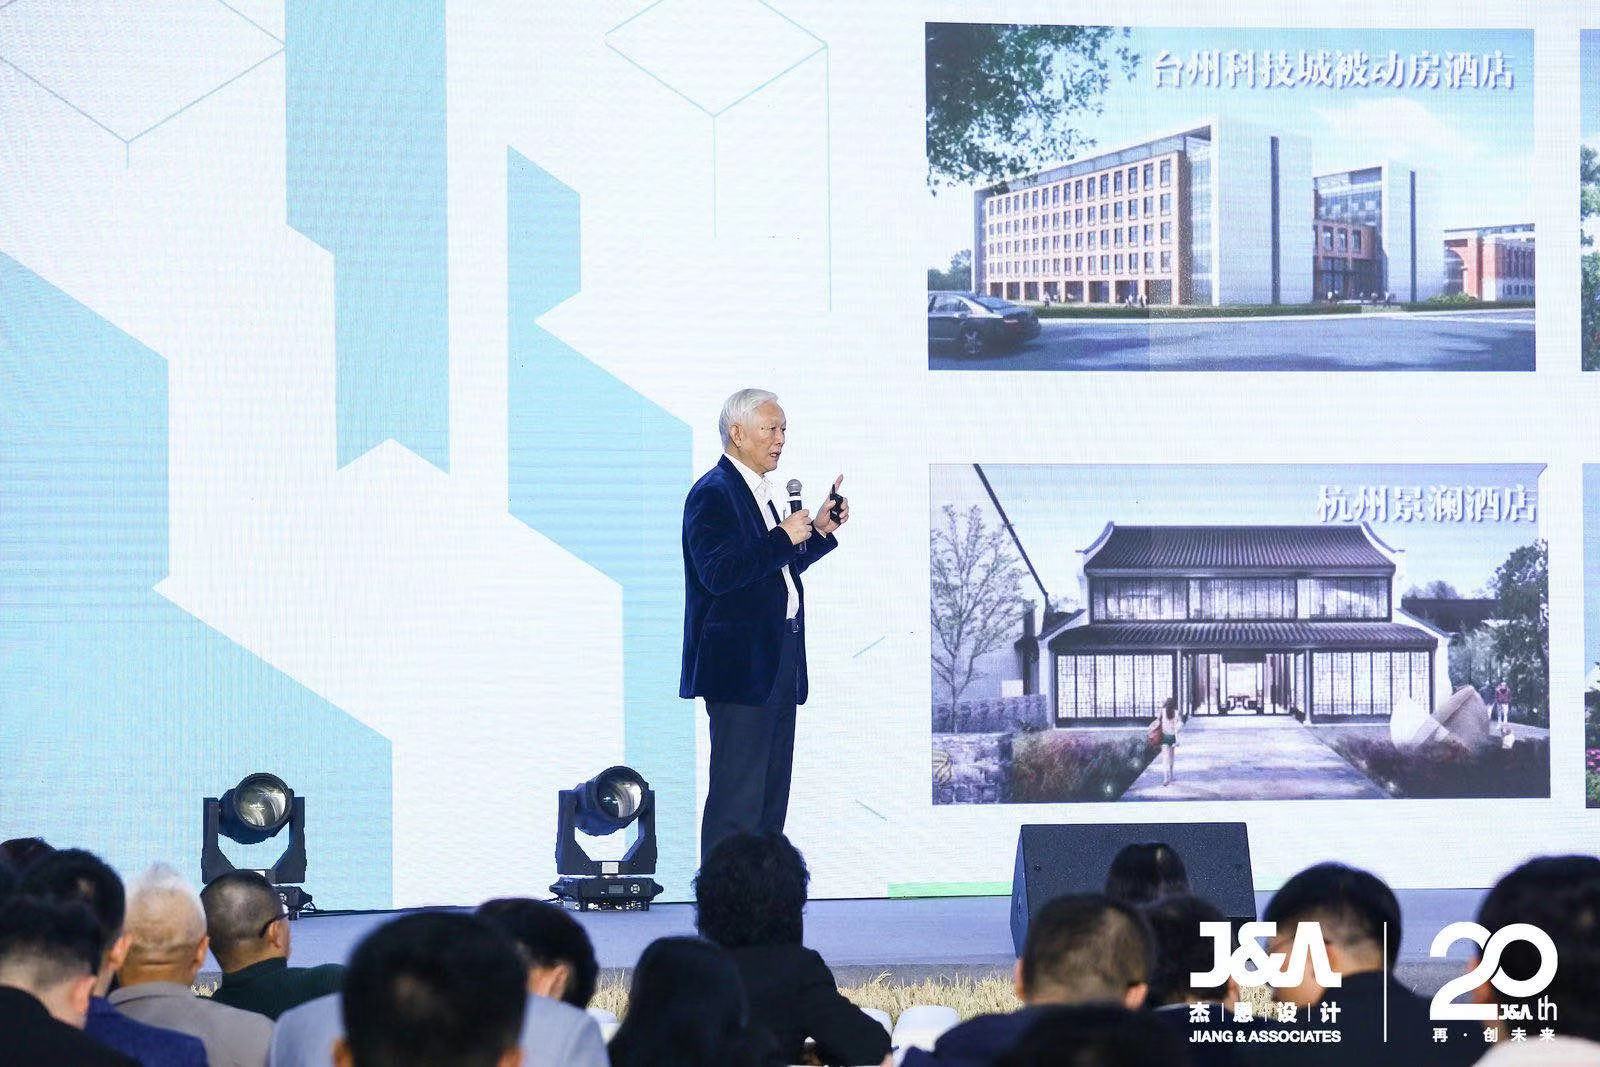 清华大学建筑学院教授/J&A杰恩设计绿色建筑高级顾问袁镔先生